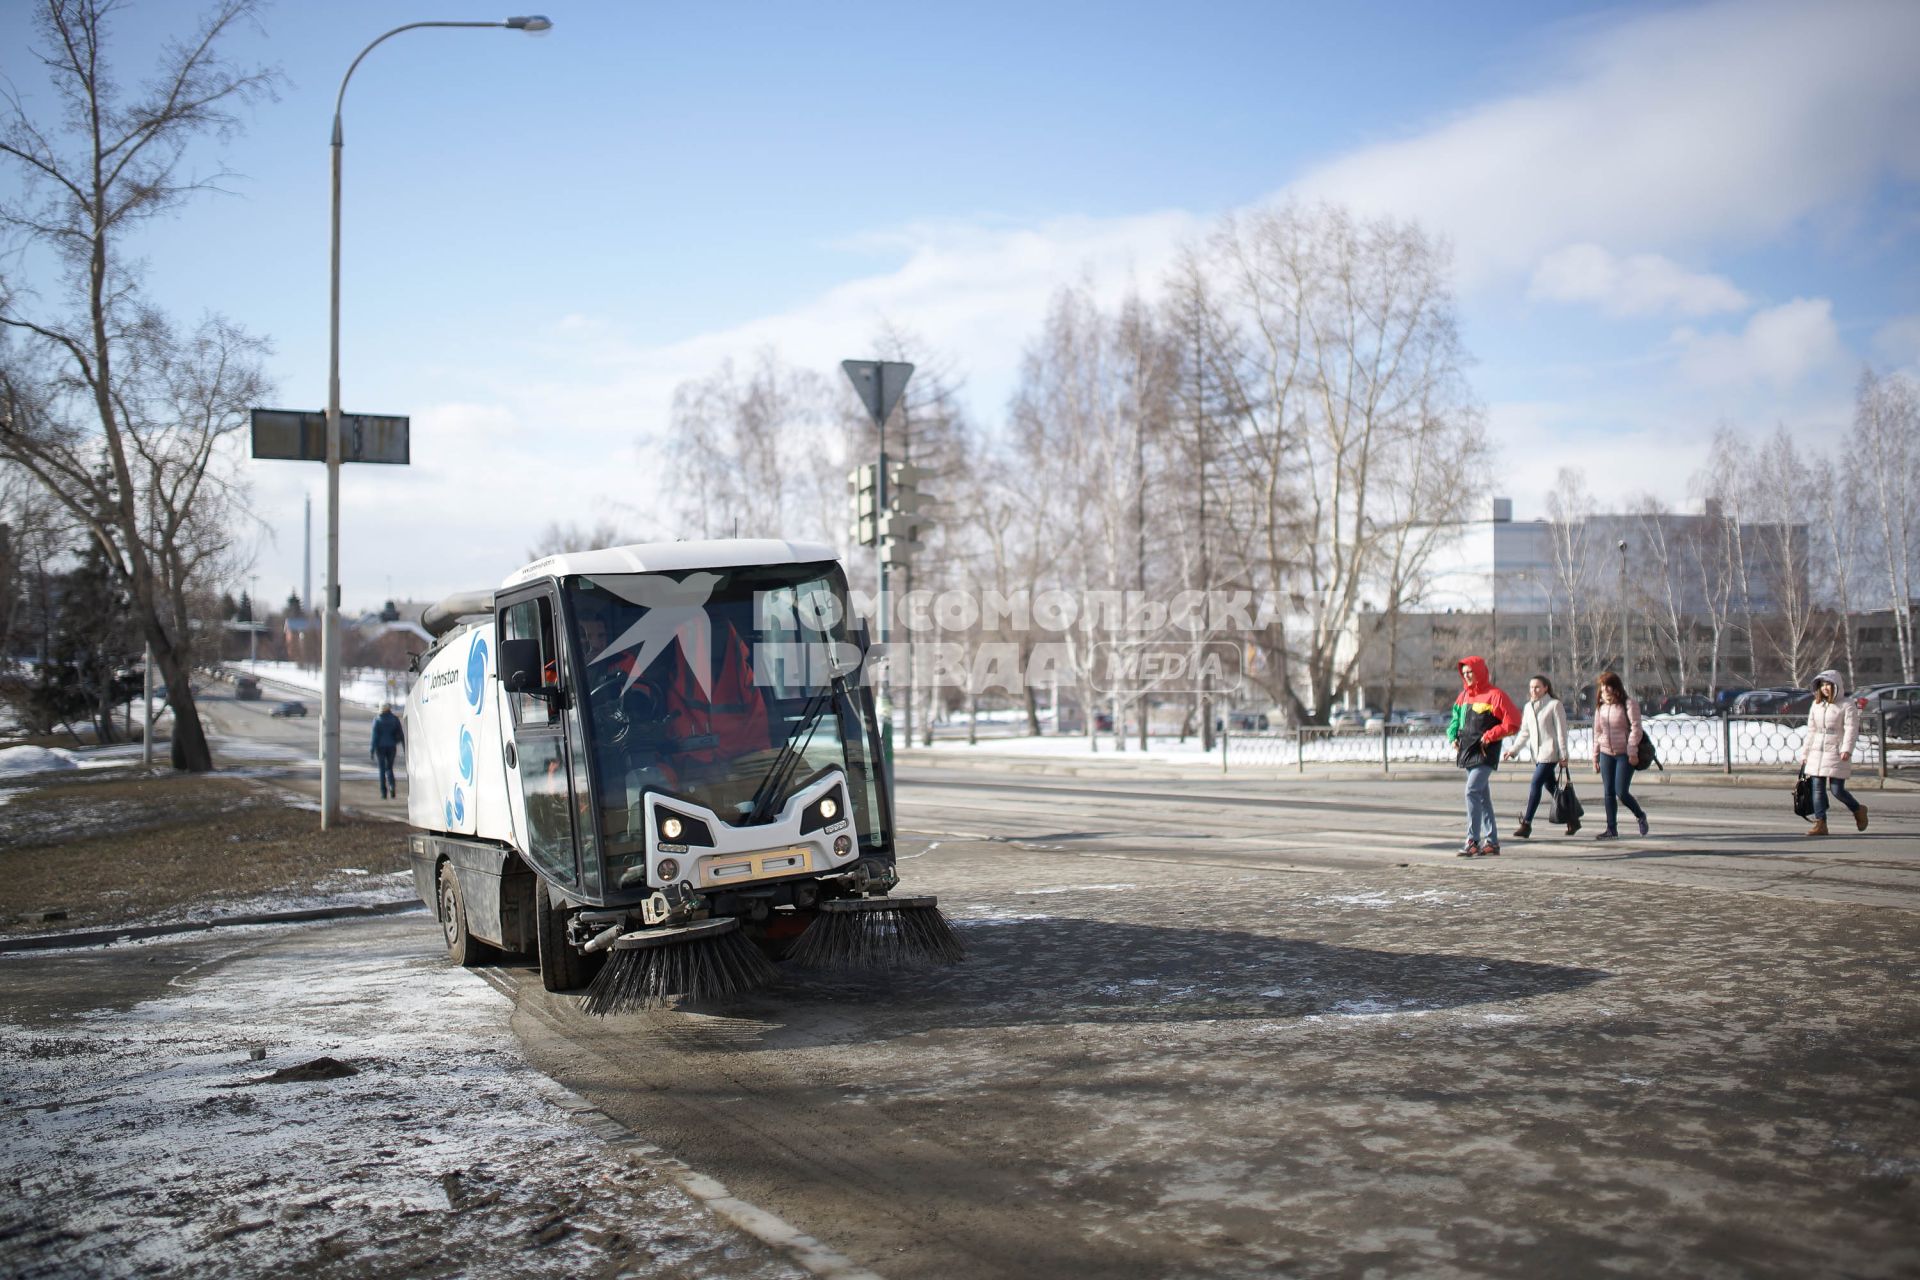 Вакуумно-подметальная уборочная машина Johnston C201 на дорогах Екатеринбурга